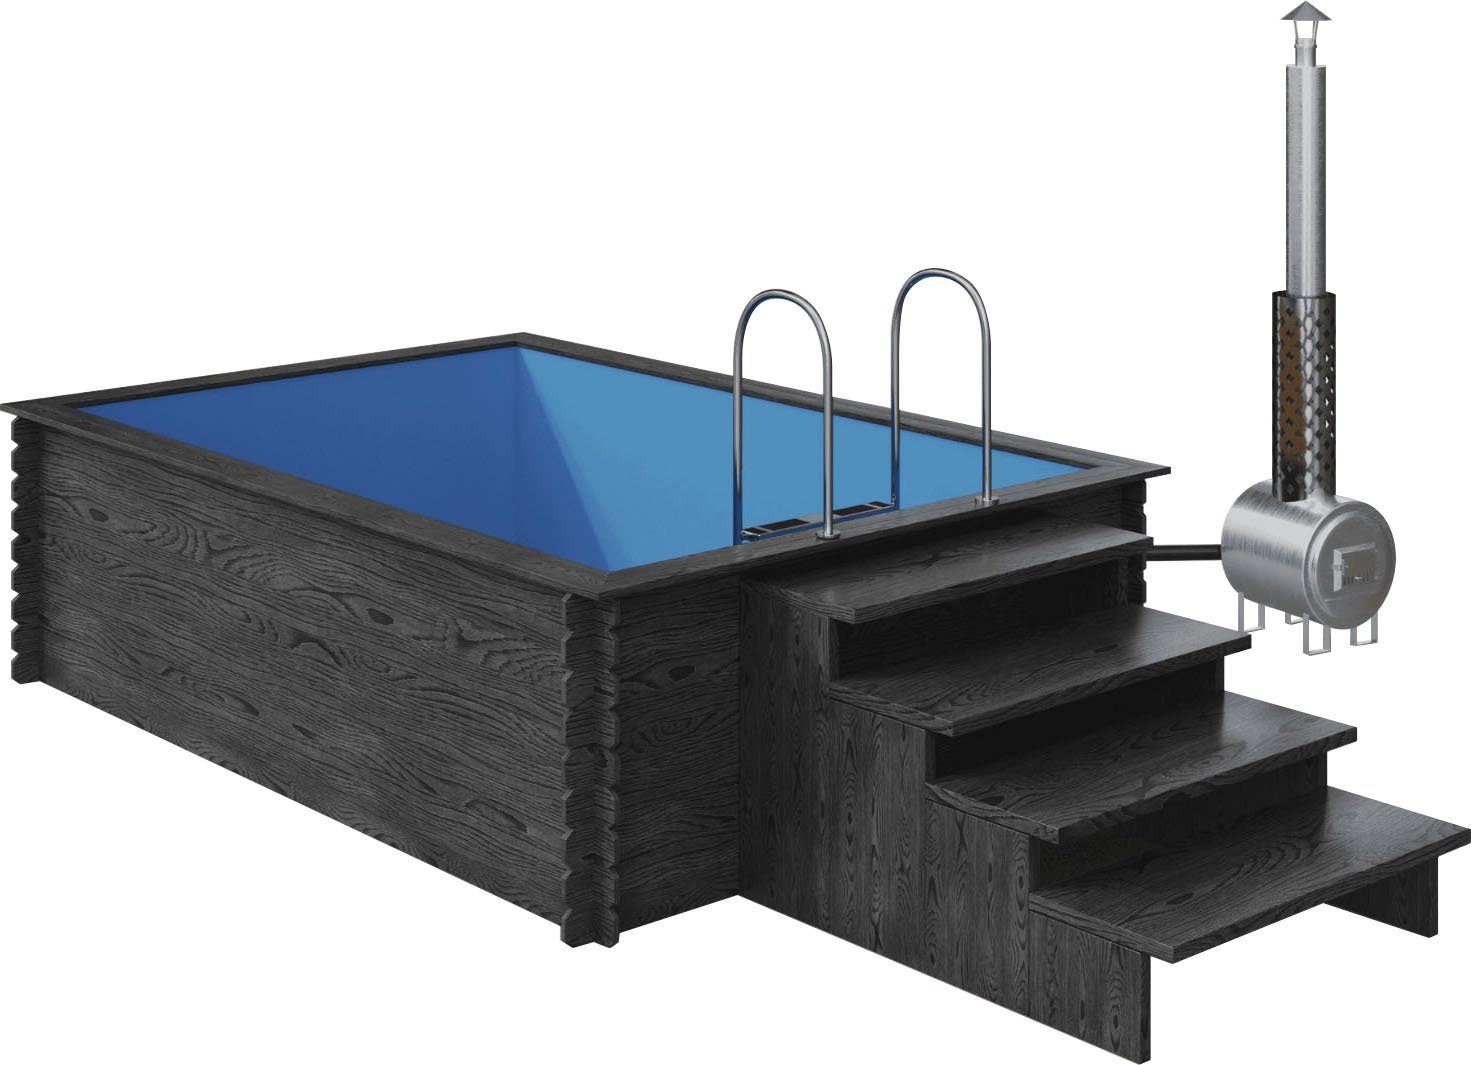 EDEN Holzmanufaktur Rechteckpool Fix&Fertig Fichtenholz Pool, inkl. Einsatz, Dämmung, seitlichem Wasserablauf, Holzofen